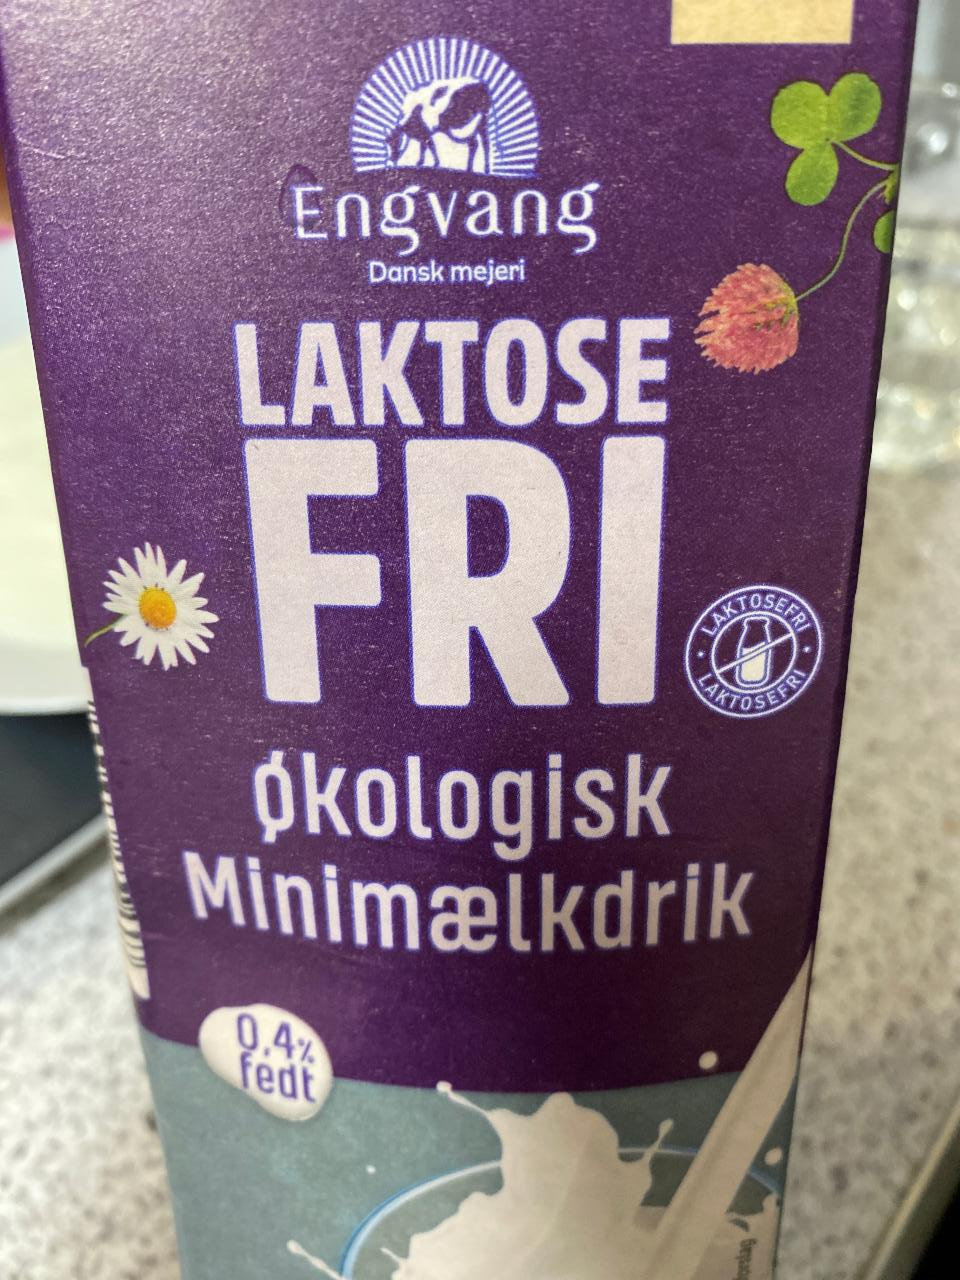 Fotografie - Laktosefri Økologisk Minimælkdrik Engvang